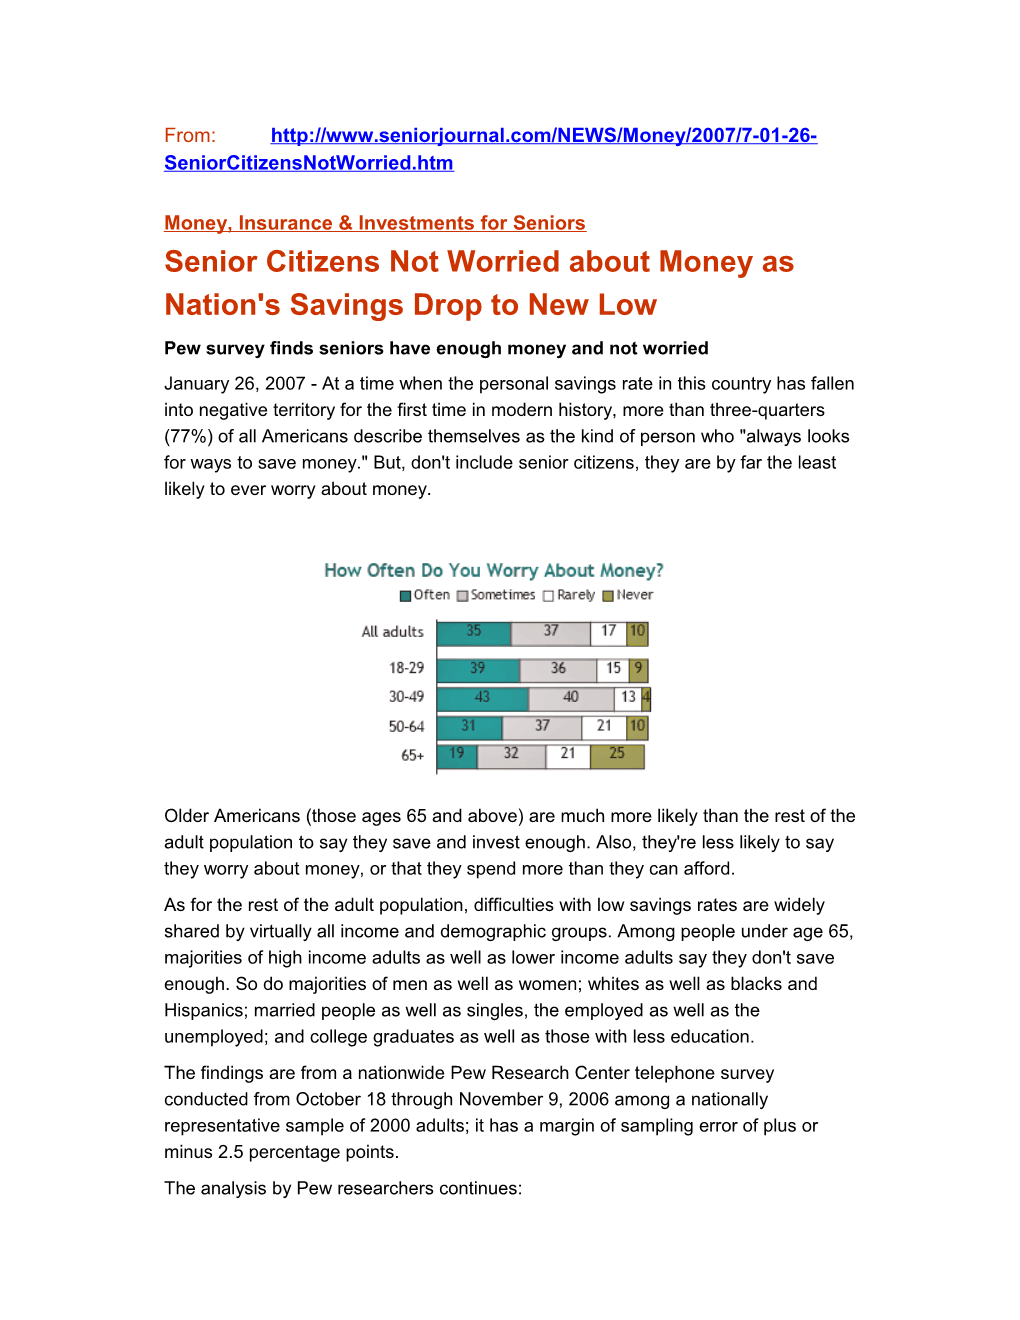 Money, Insurance & Investments for Seniors